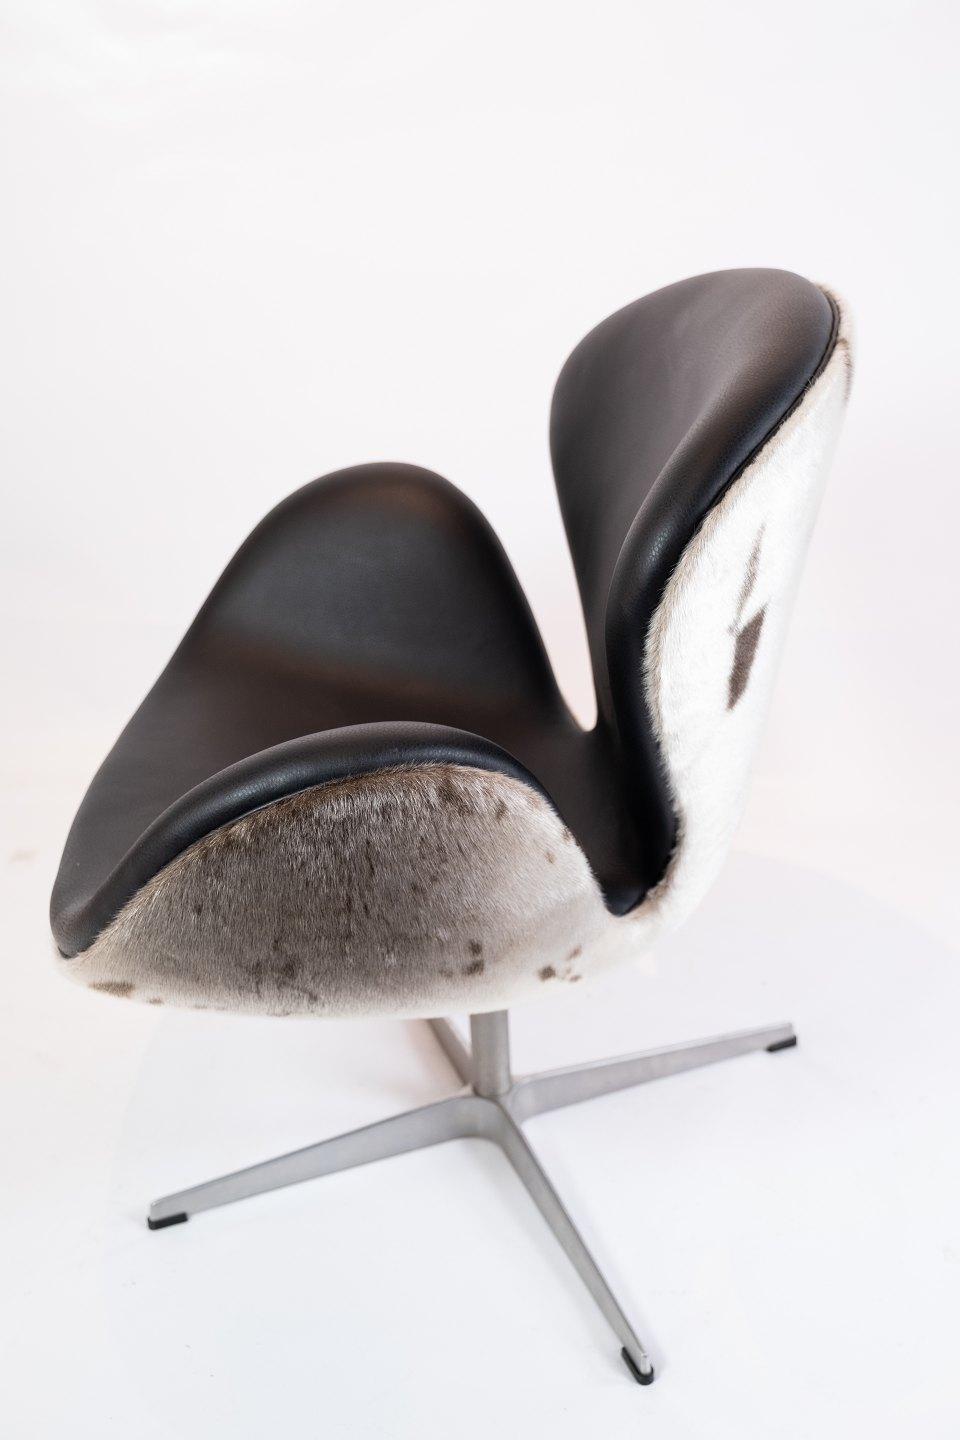 Danish Swan Chair, Model 3320, Designed by Arne Jacobsen, 2002